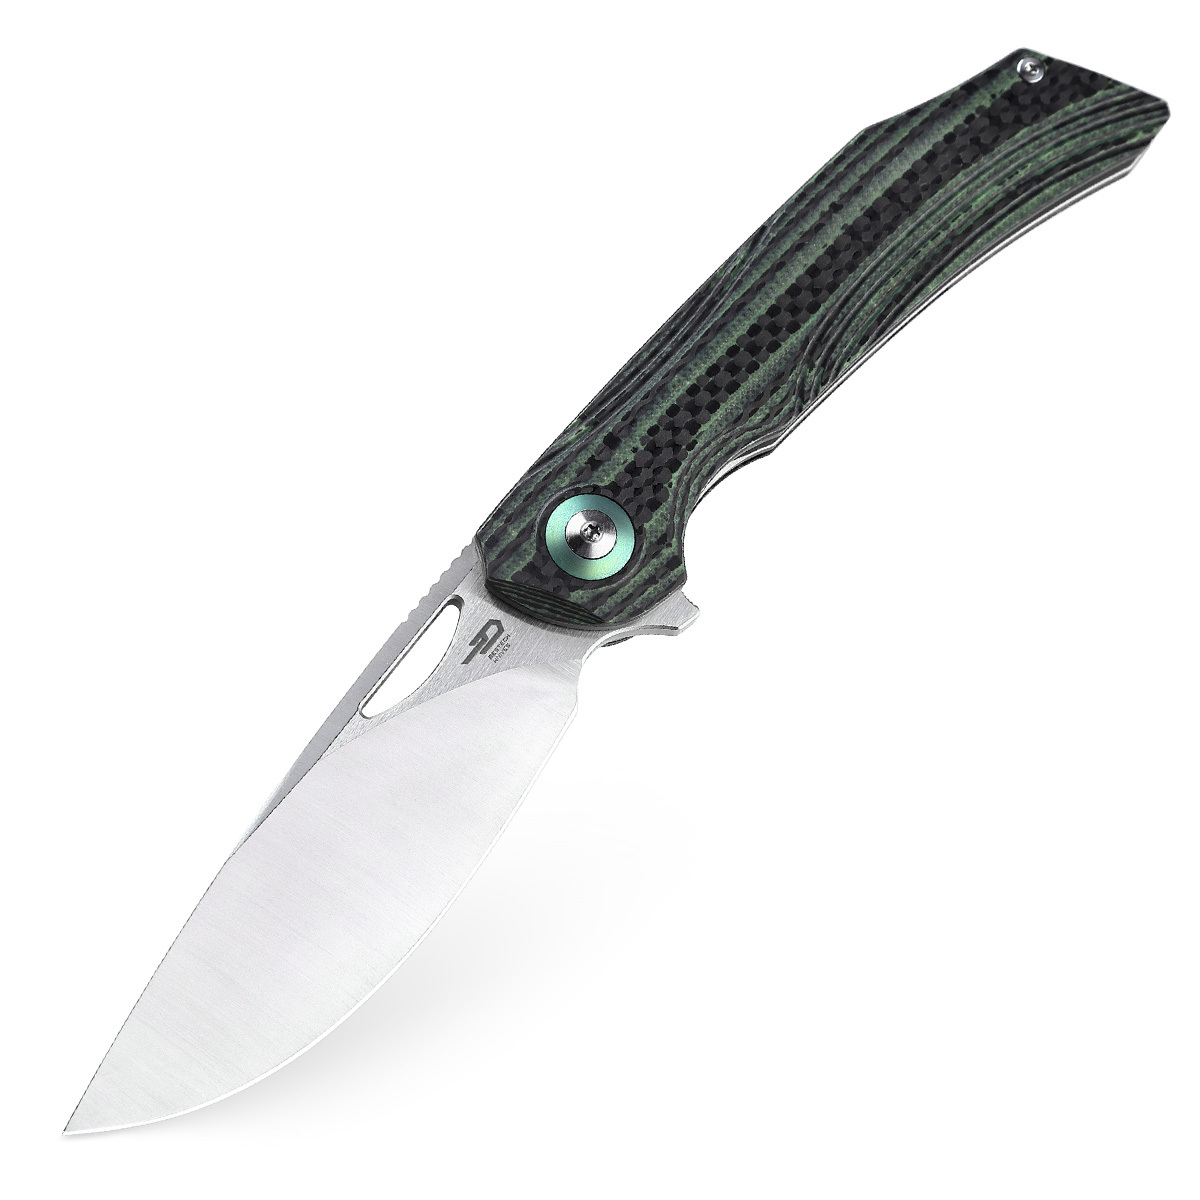 Складной нож Bestech Falko, сталь 154CM, рукоять G10/Carbon fiber, зеленый складной нож bestech swift сталь d2 micarta